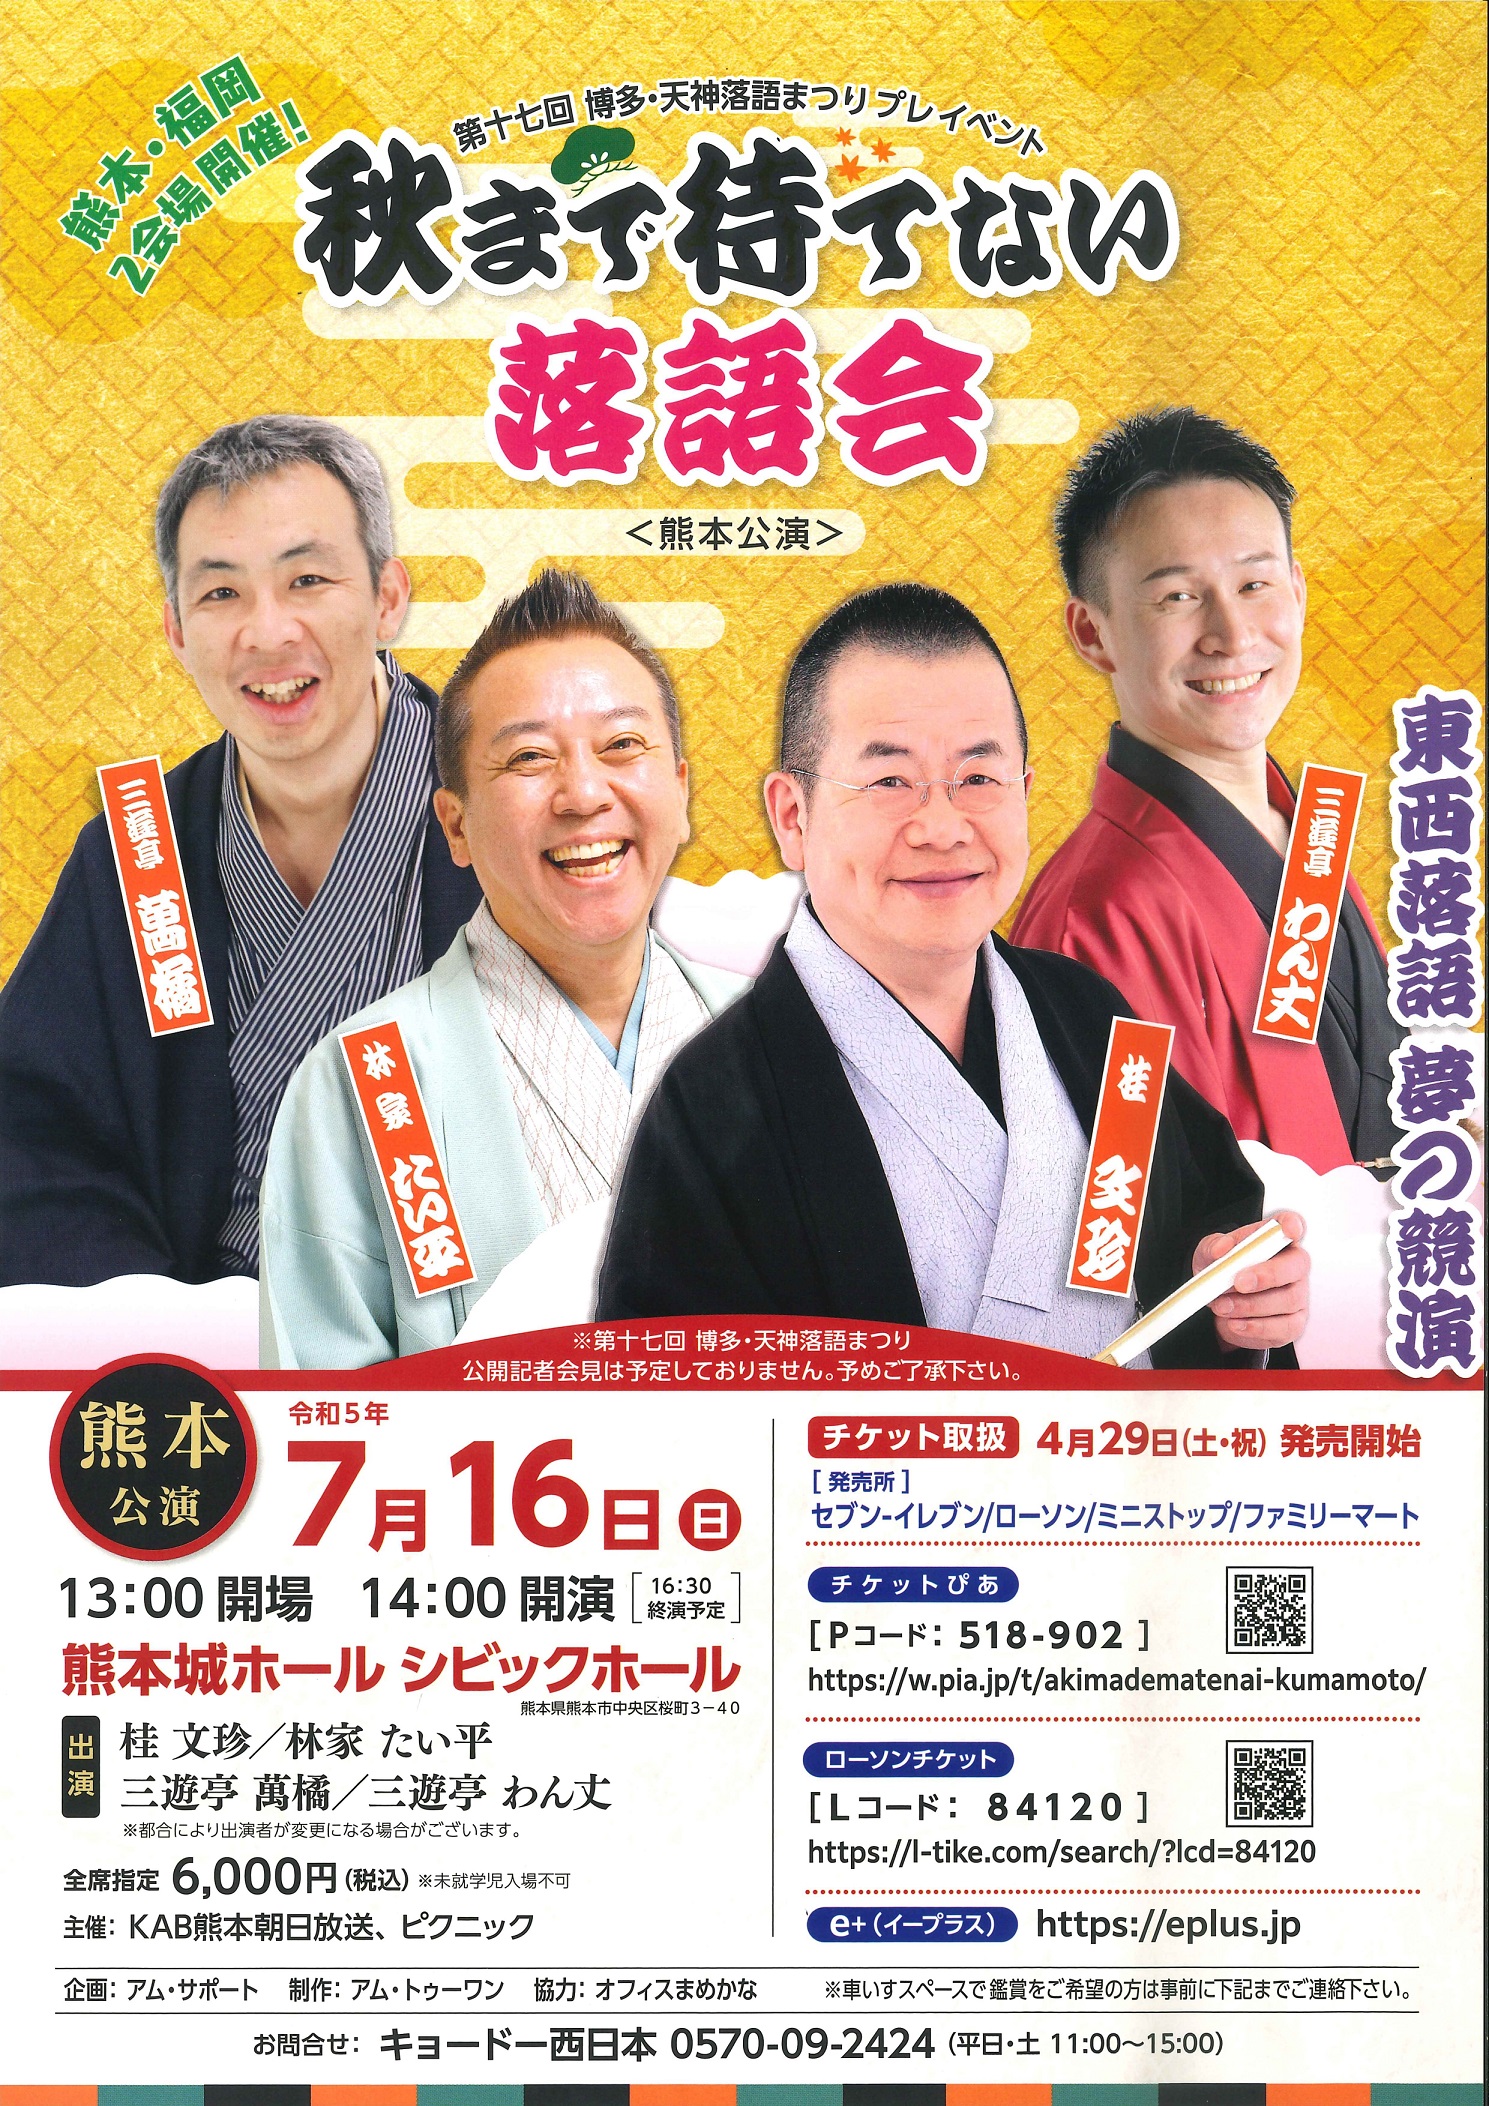 イベントカレンダー | 熊本城ホール